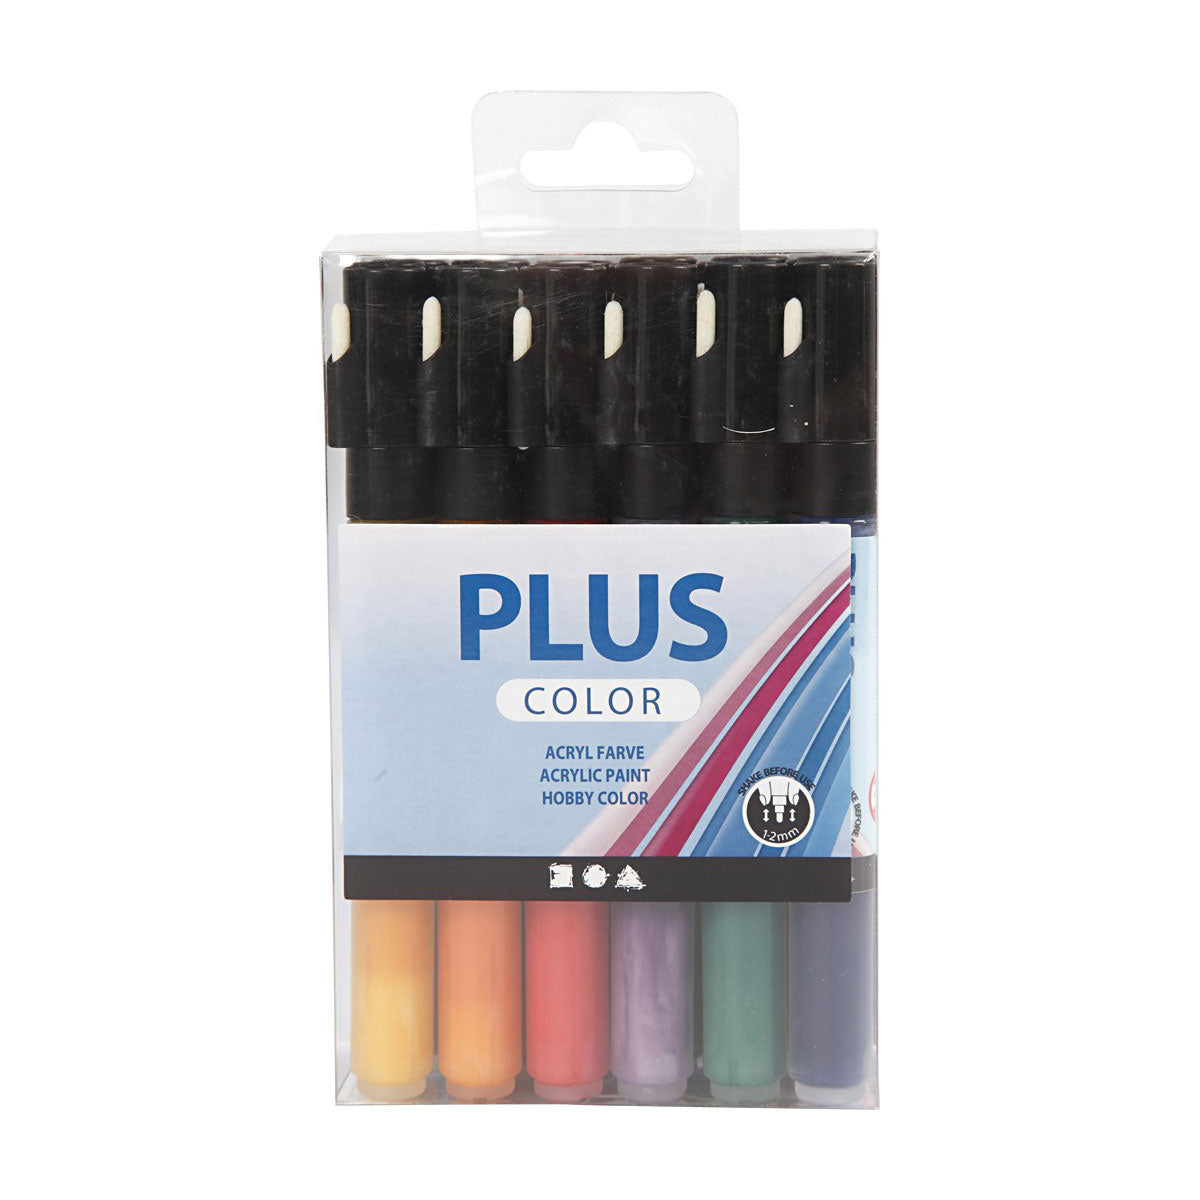 Pennarelli acrilici Plus Color Pennarello per pittura acrilica, 18 pezzi.